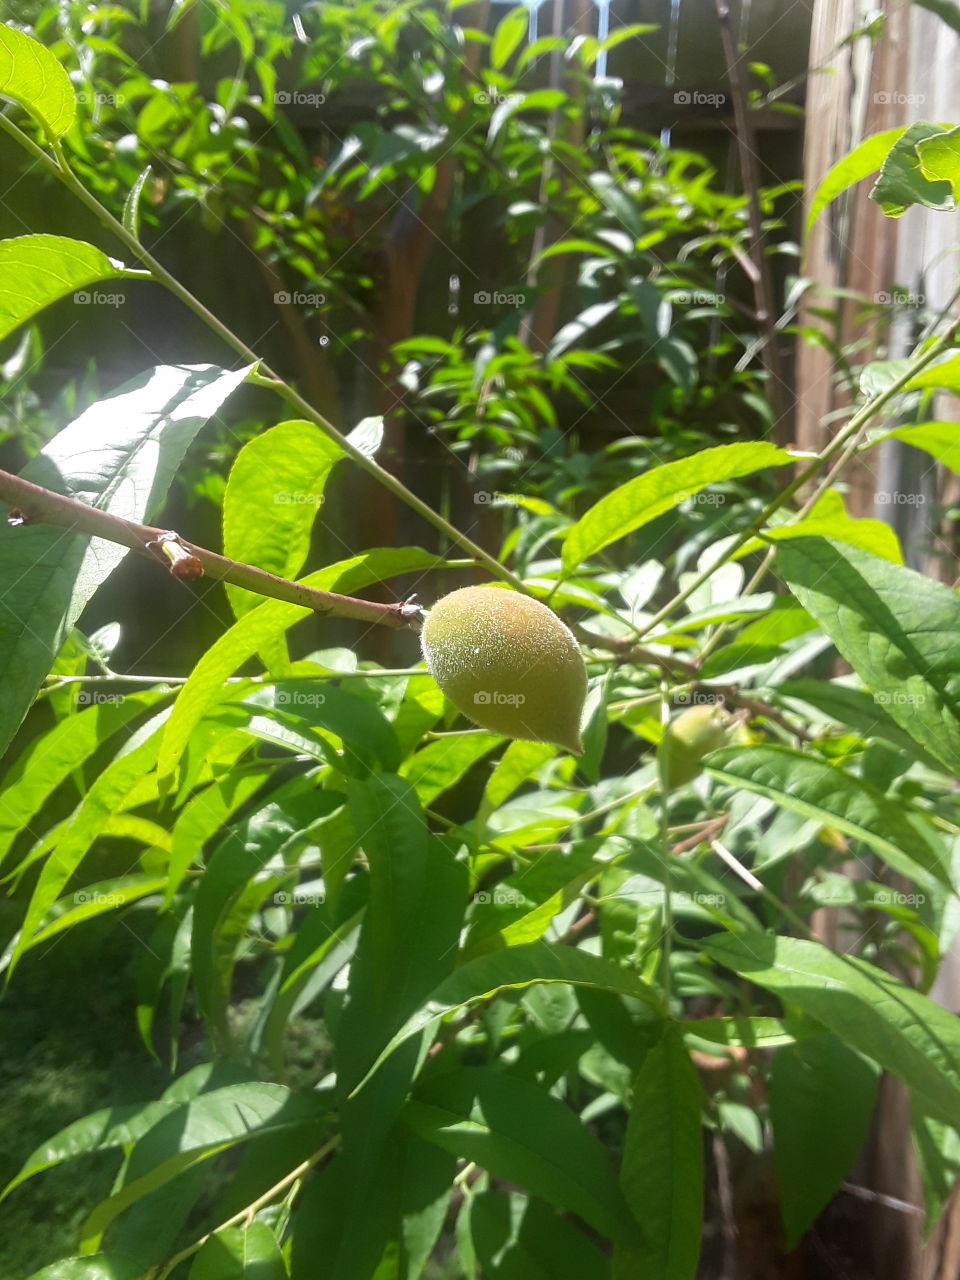 peachy growing